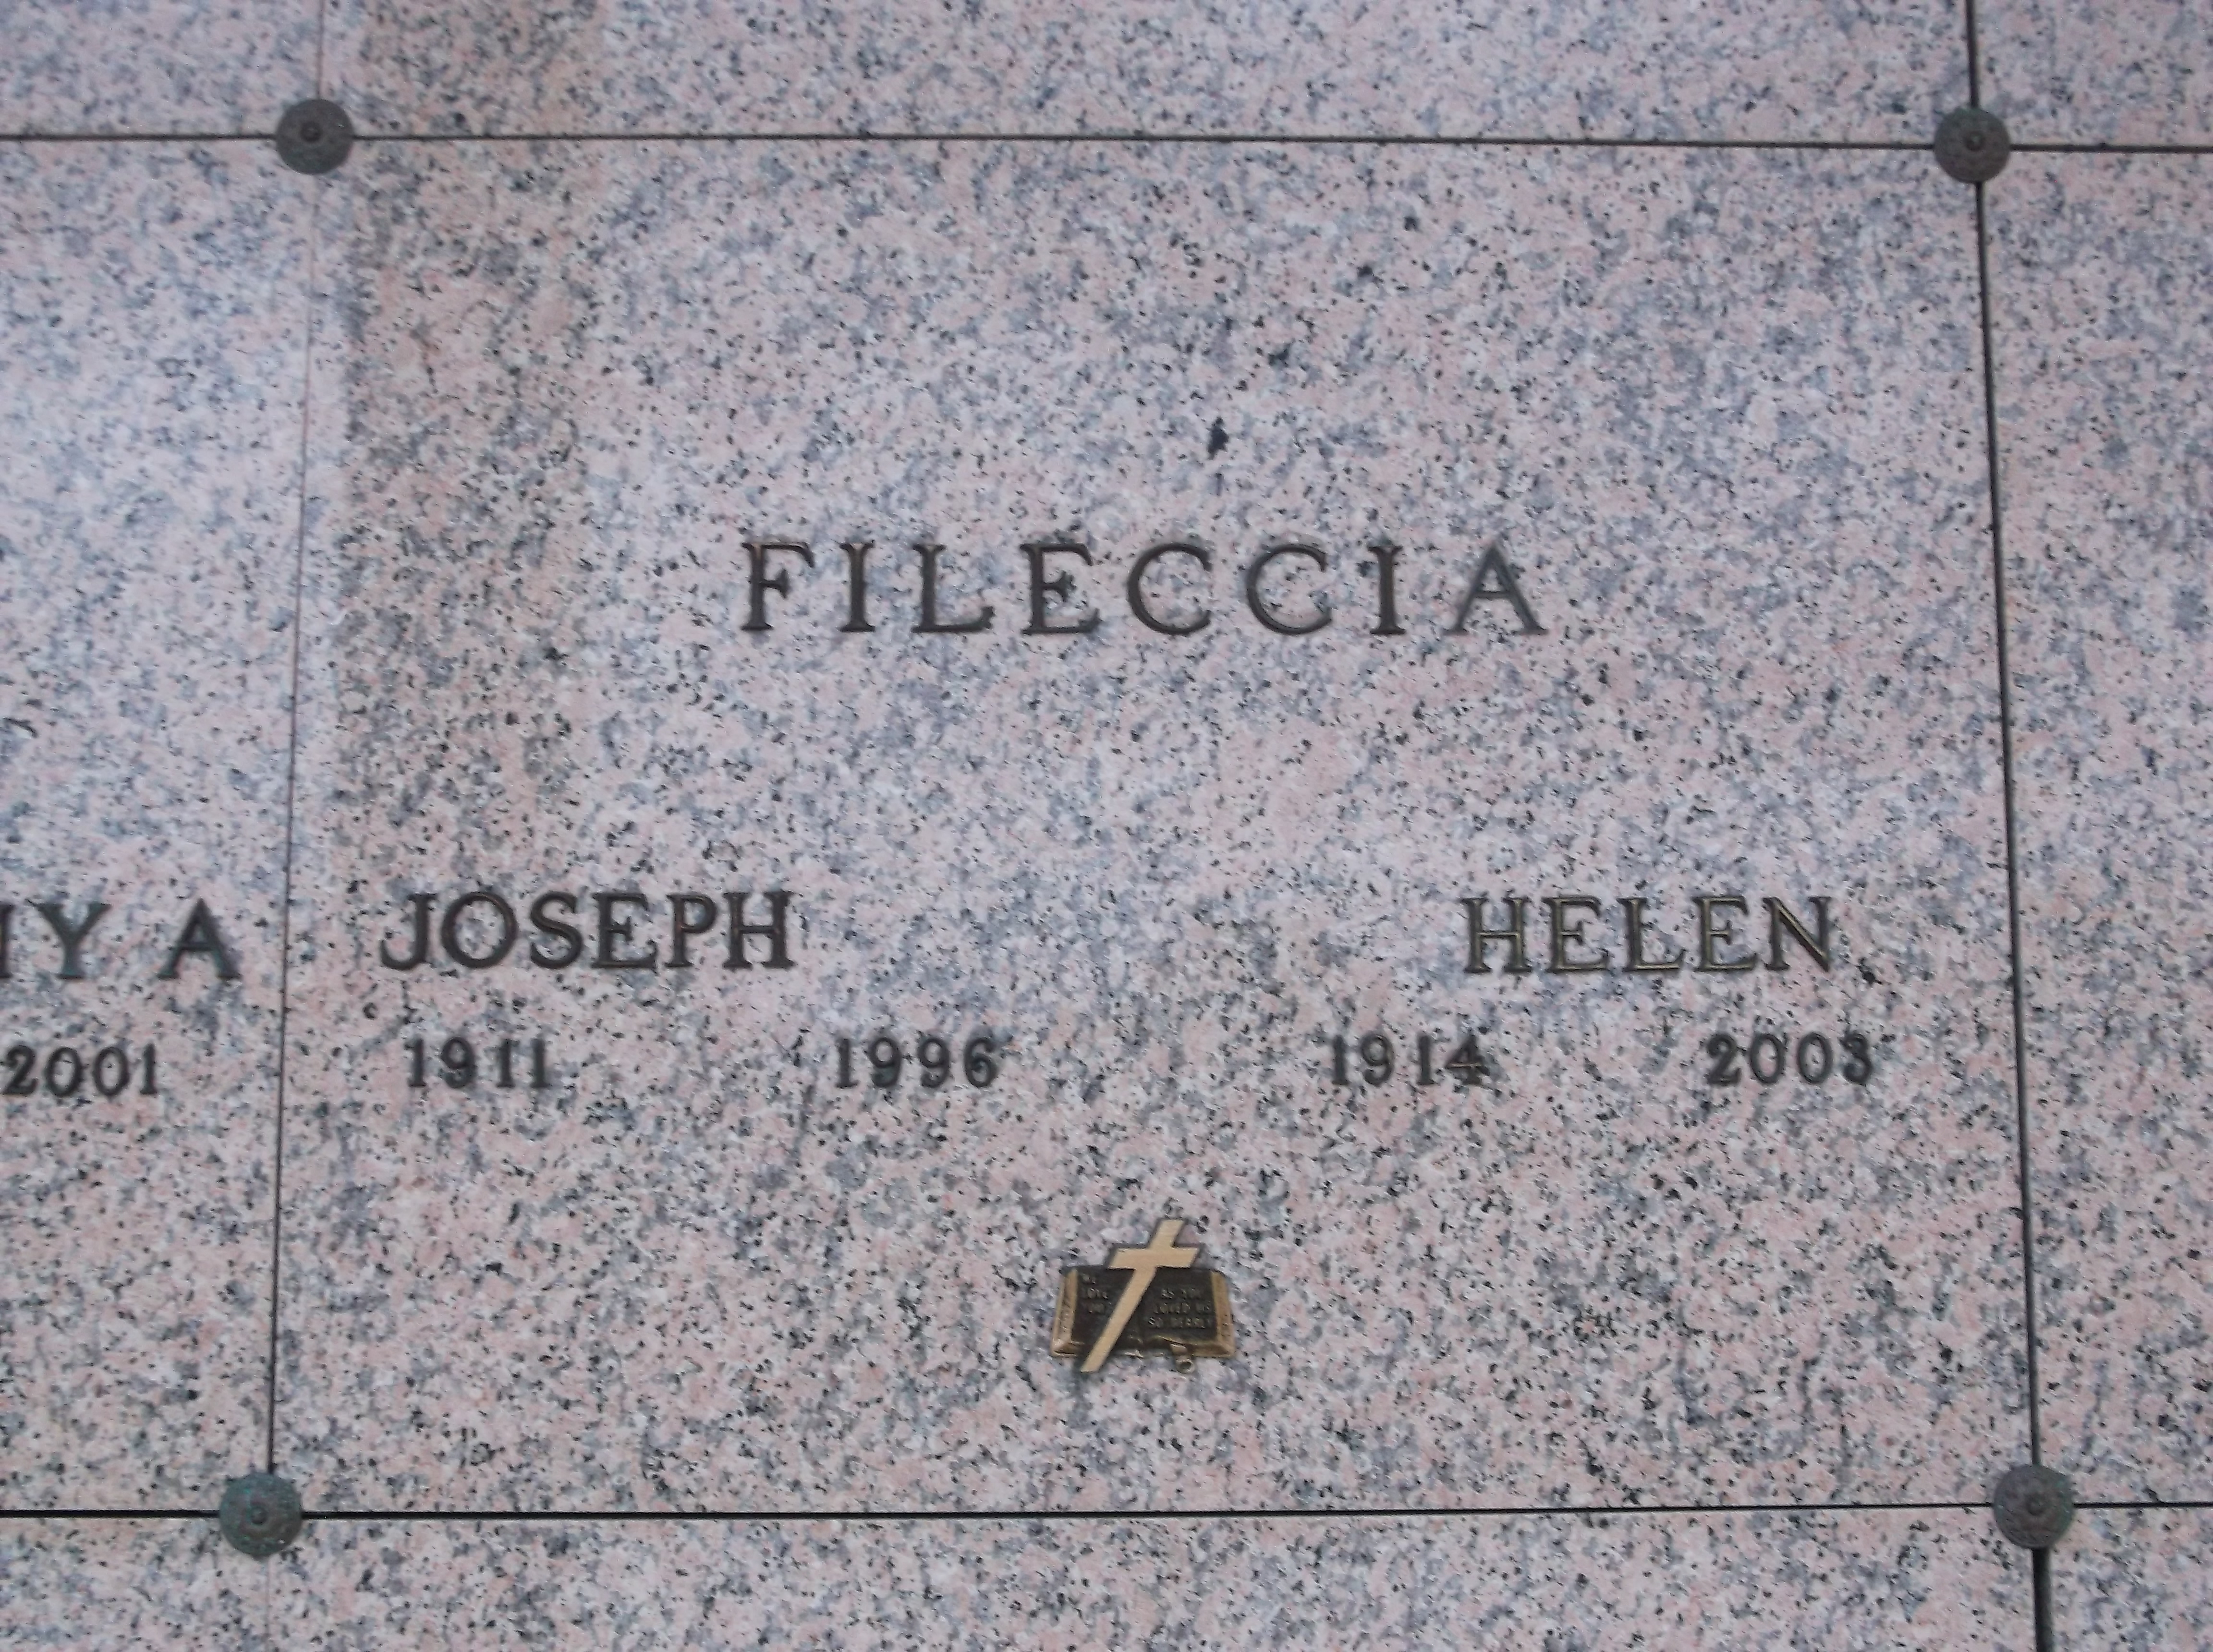 Joseph Fileccia